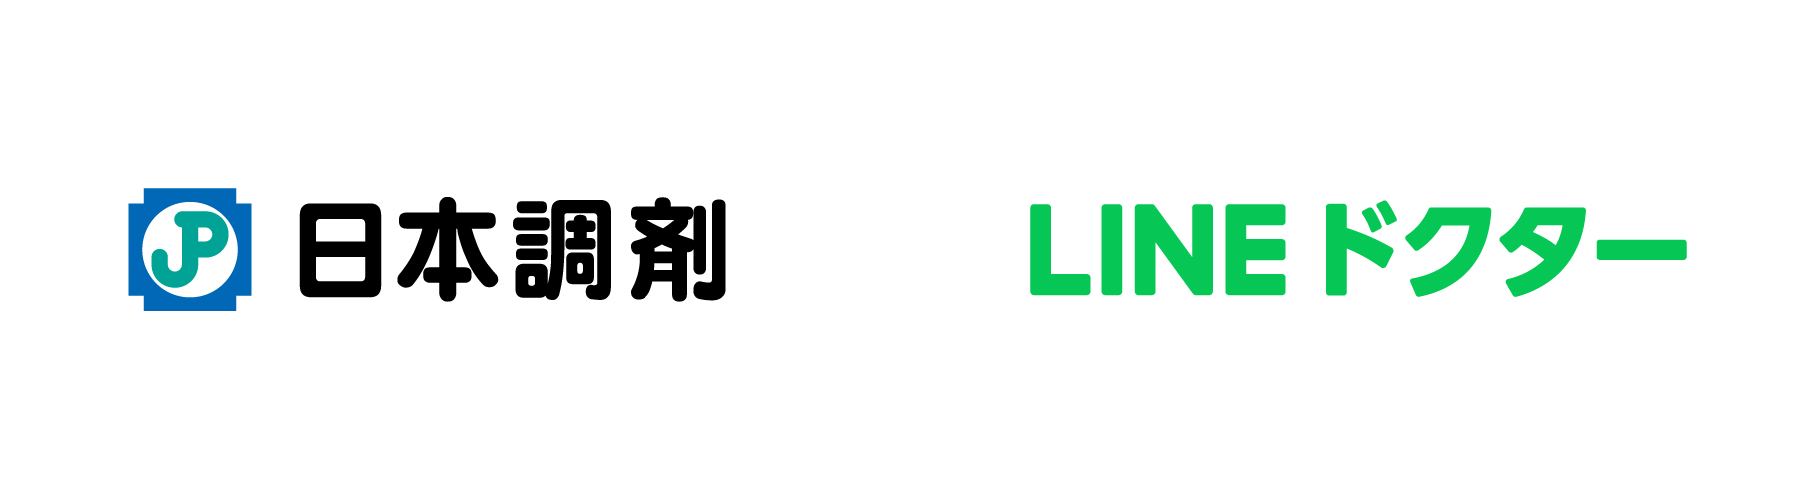 日本調剤のロゴとLINドクターのロゴ